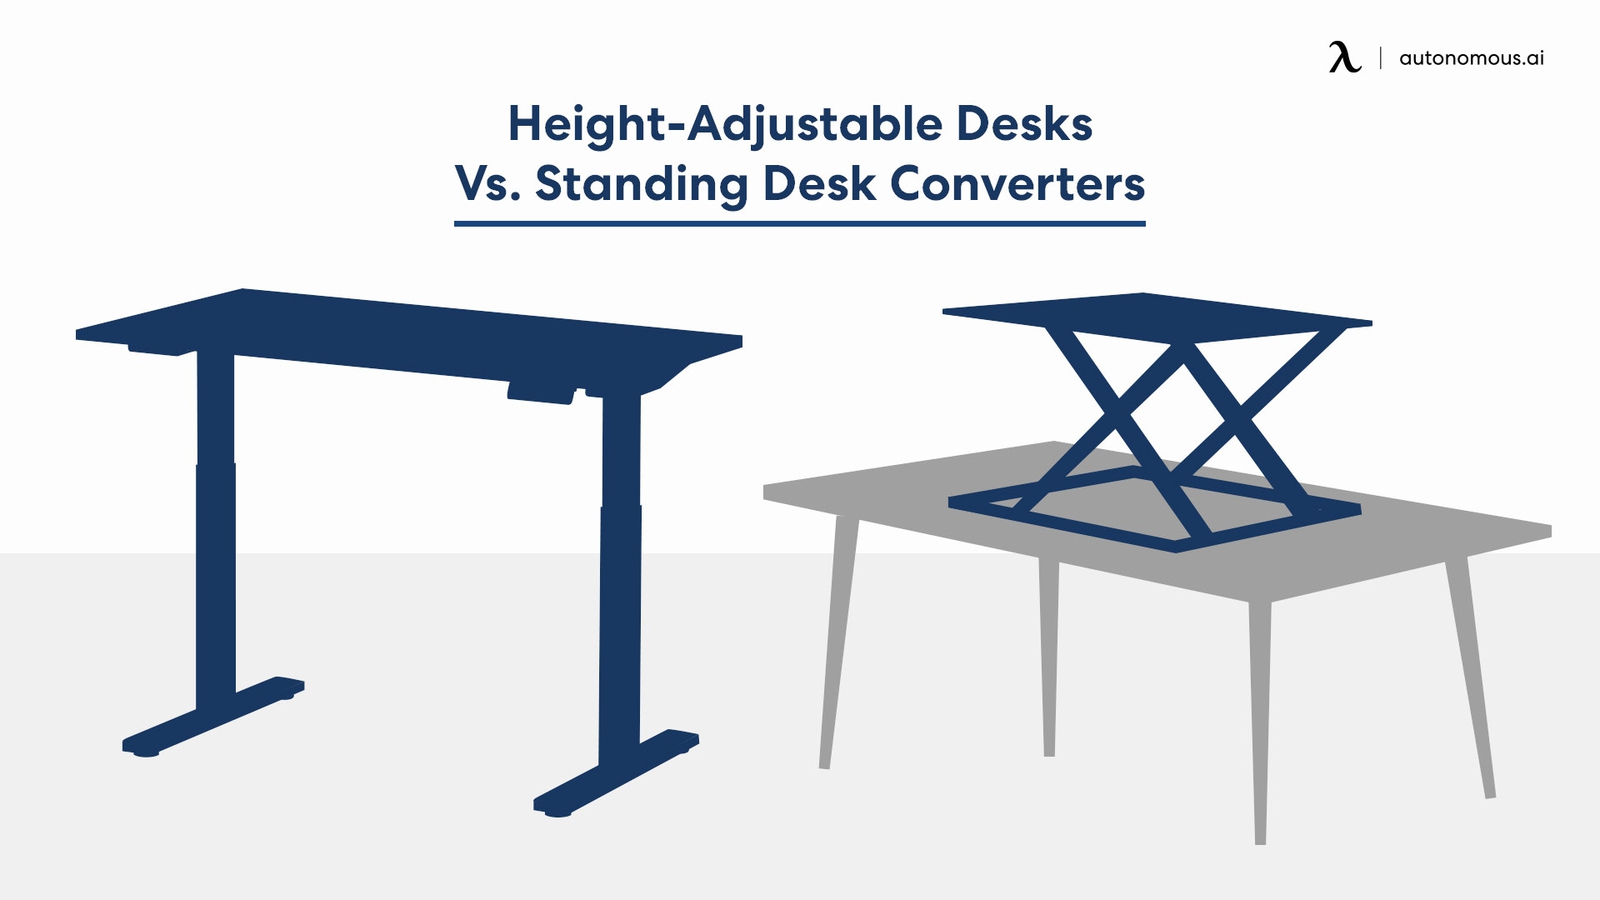 Height-Adjustable Desks vs Standing Desk Converters: Which is Best?